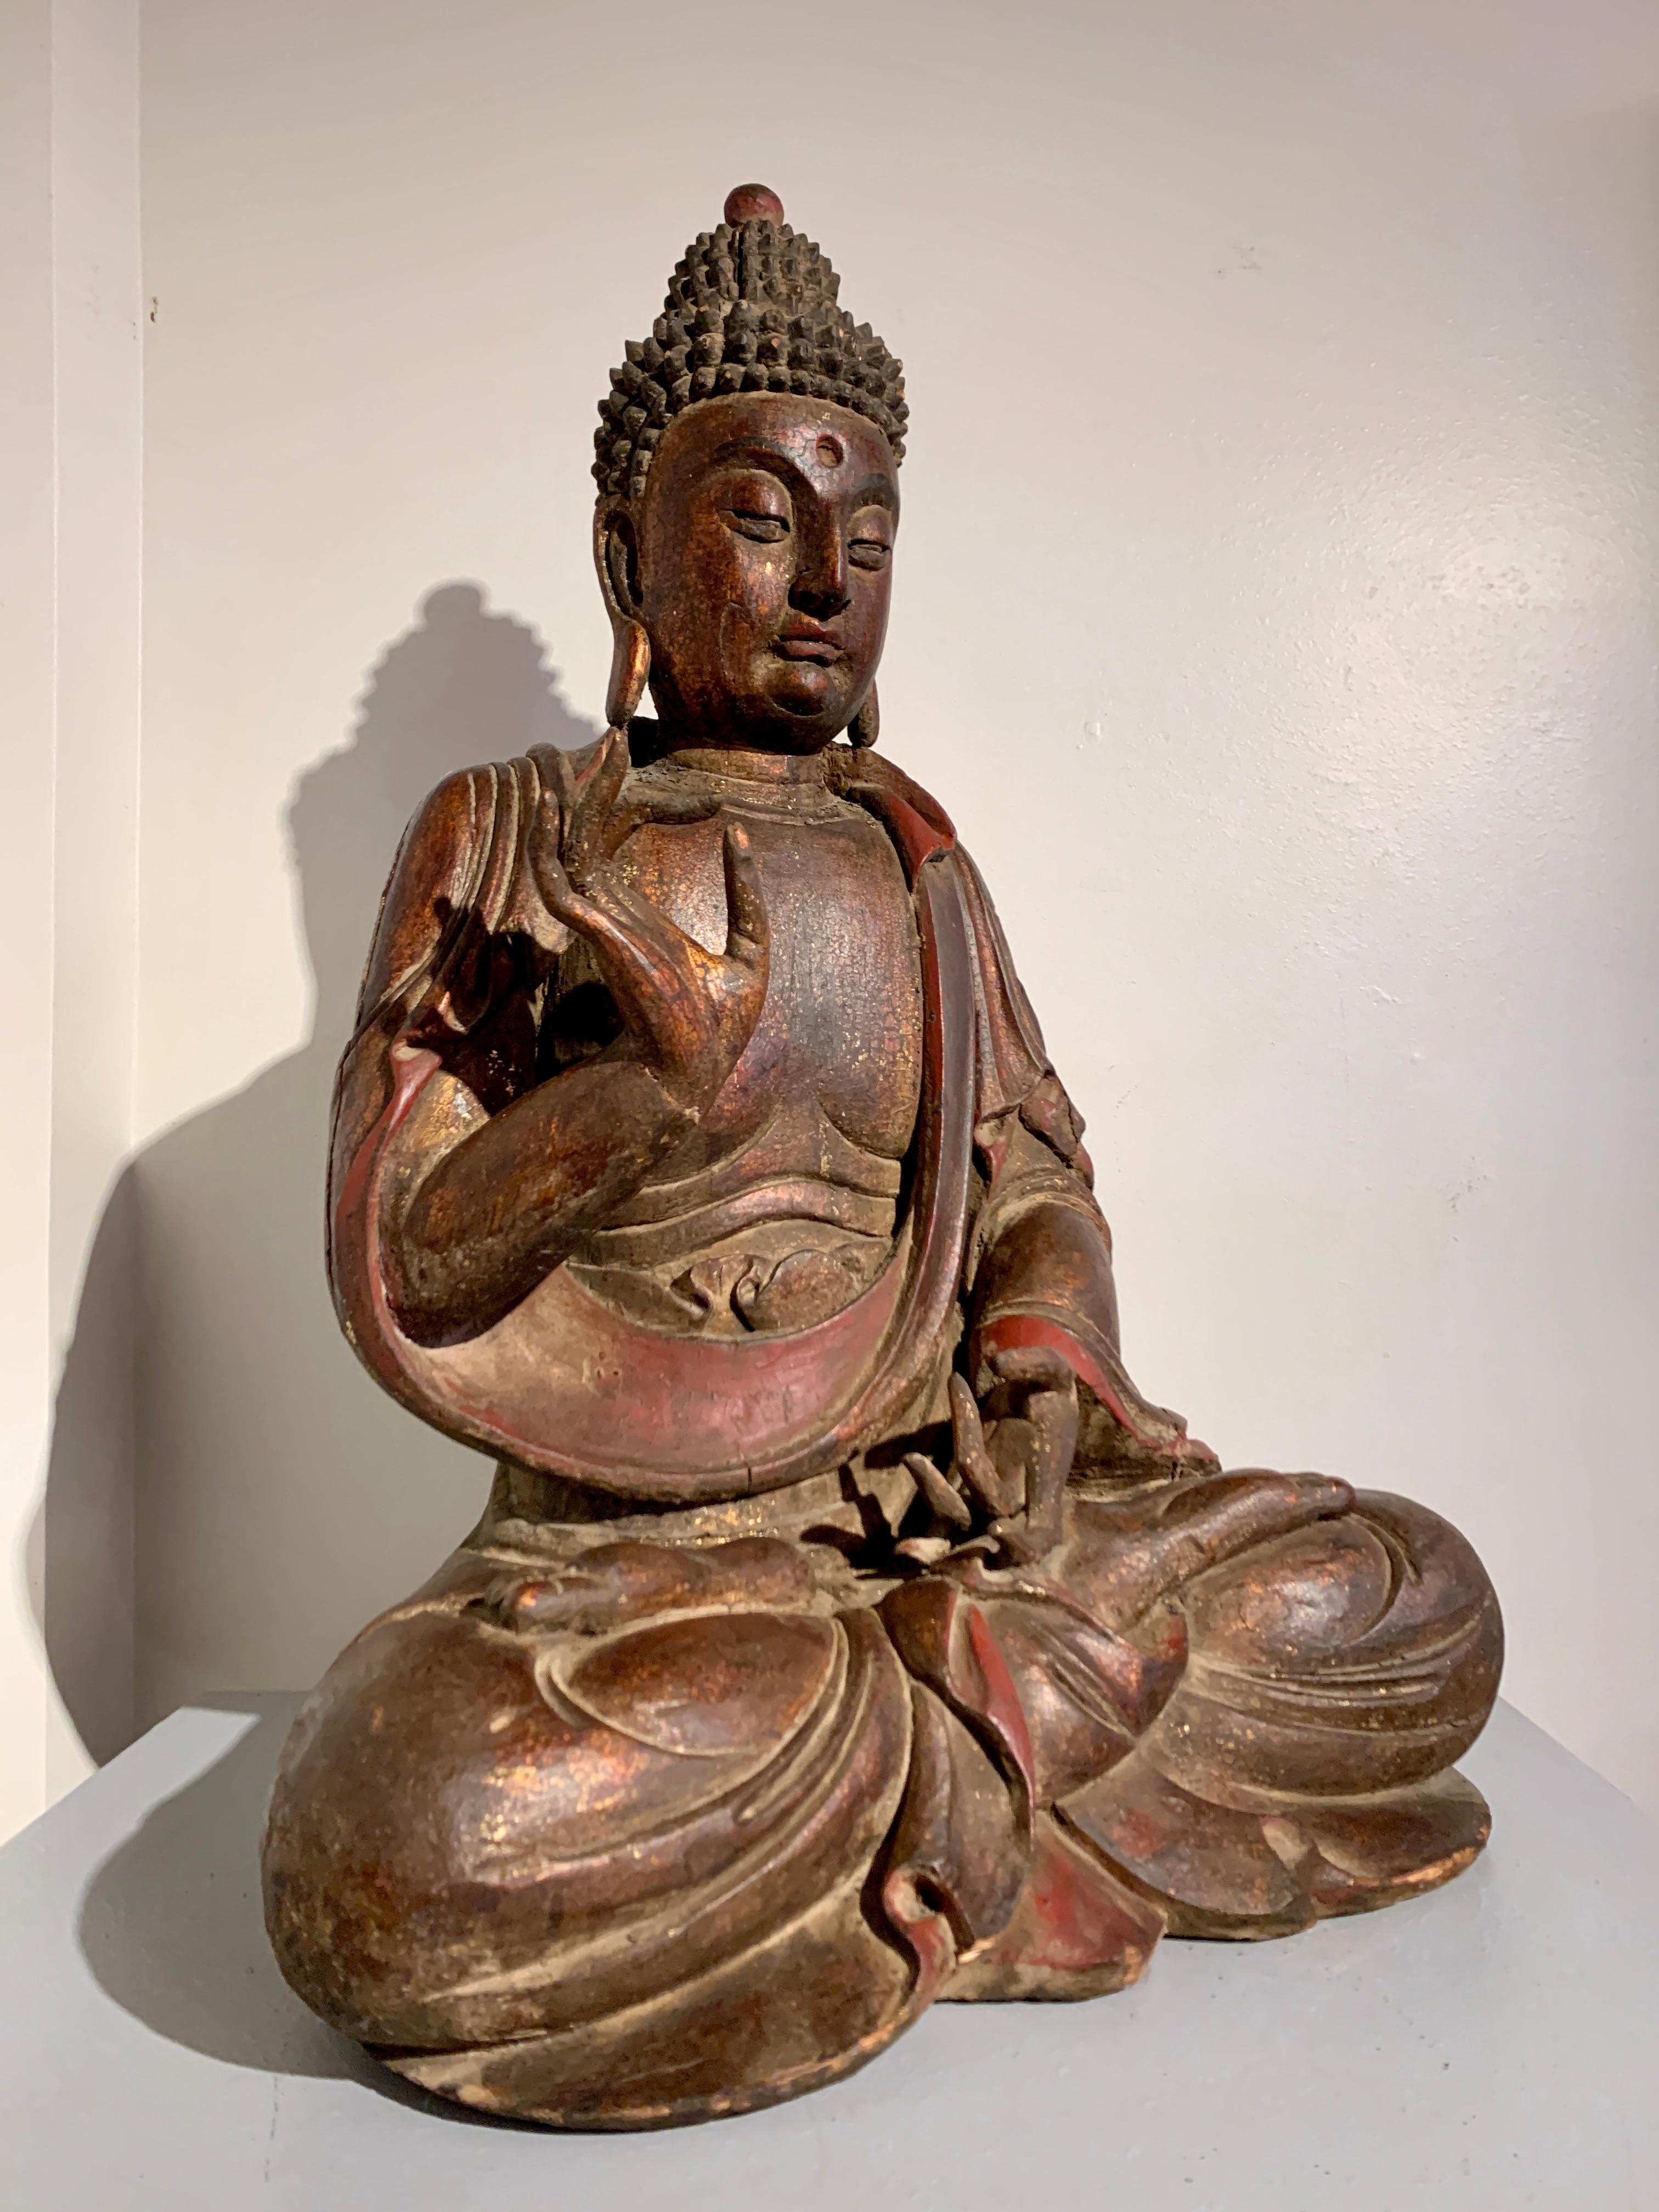 Grande et magnifique figure de Bouddha en bois sculpté et laqué, presque grandeur nature, dynastie Qing, XIXe siècle ou avant, Chine du Sud. 

La figure représente probablement l'un des cinq Tathagatas, également connus sous le nom de bouddhas